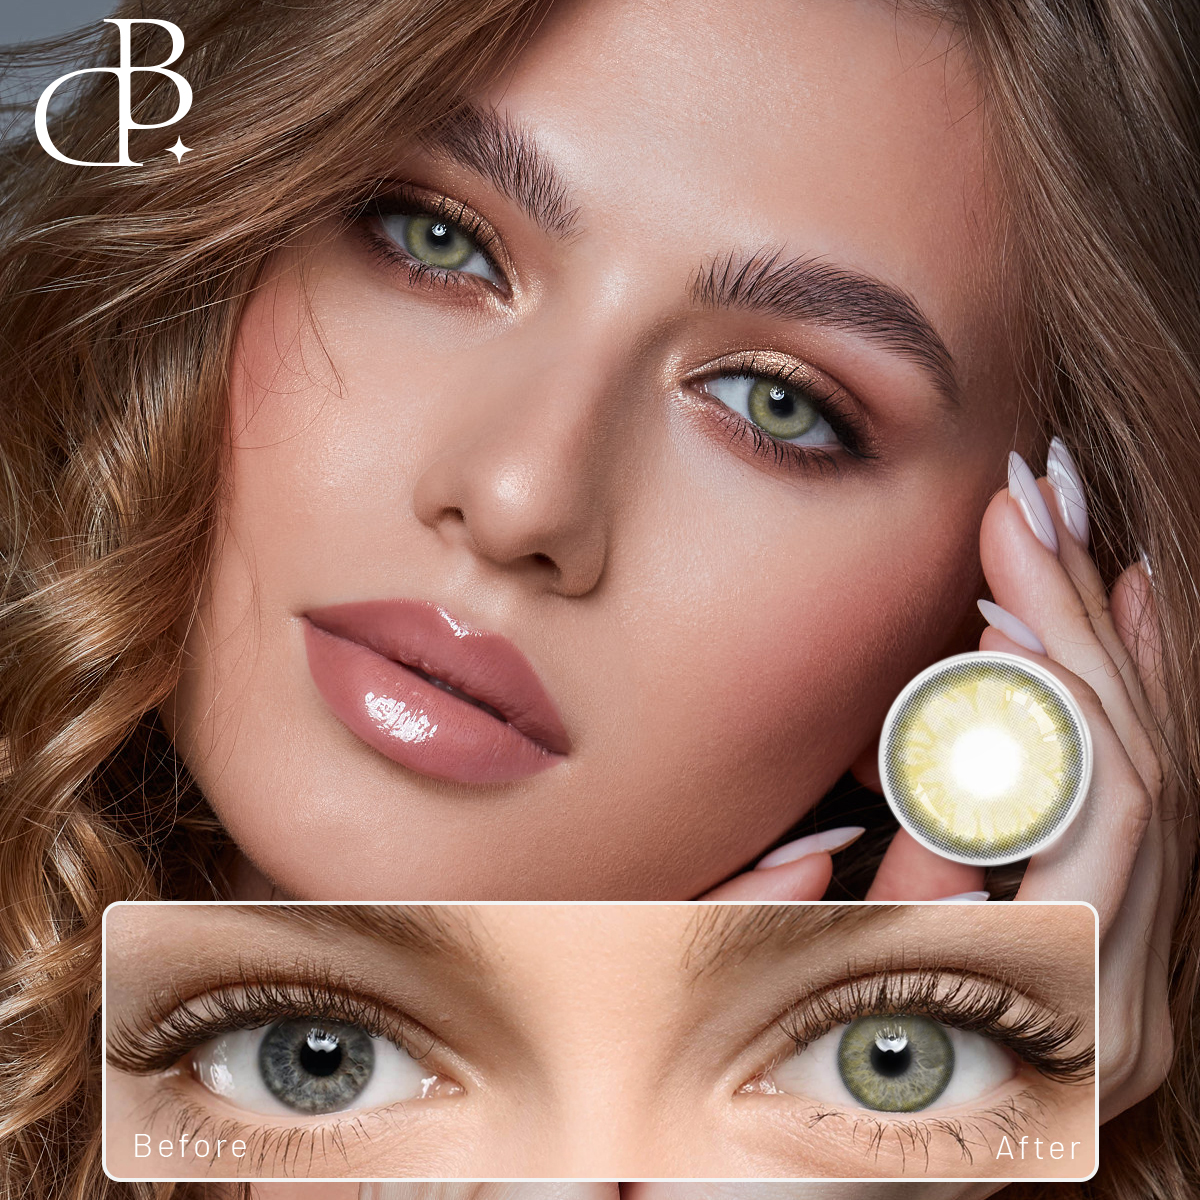 vuosittaiset halvat värilliset piilolinssit 14,2mm kontaktilinssit tukkumyynti silmille